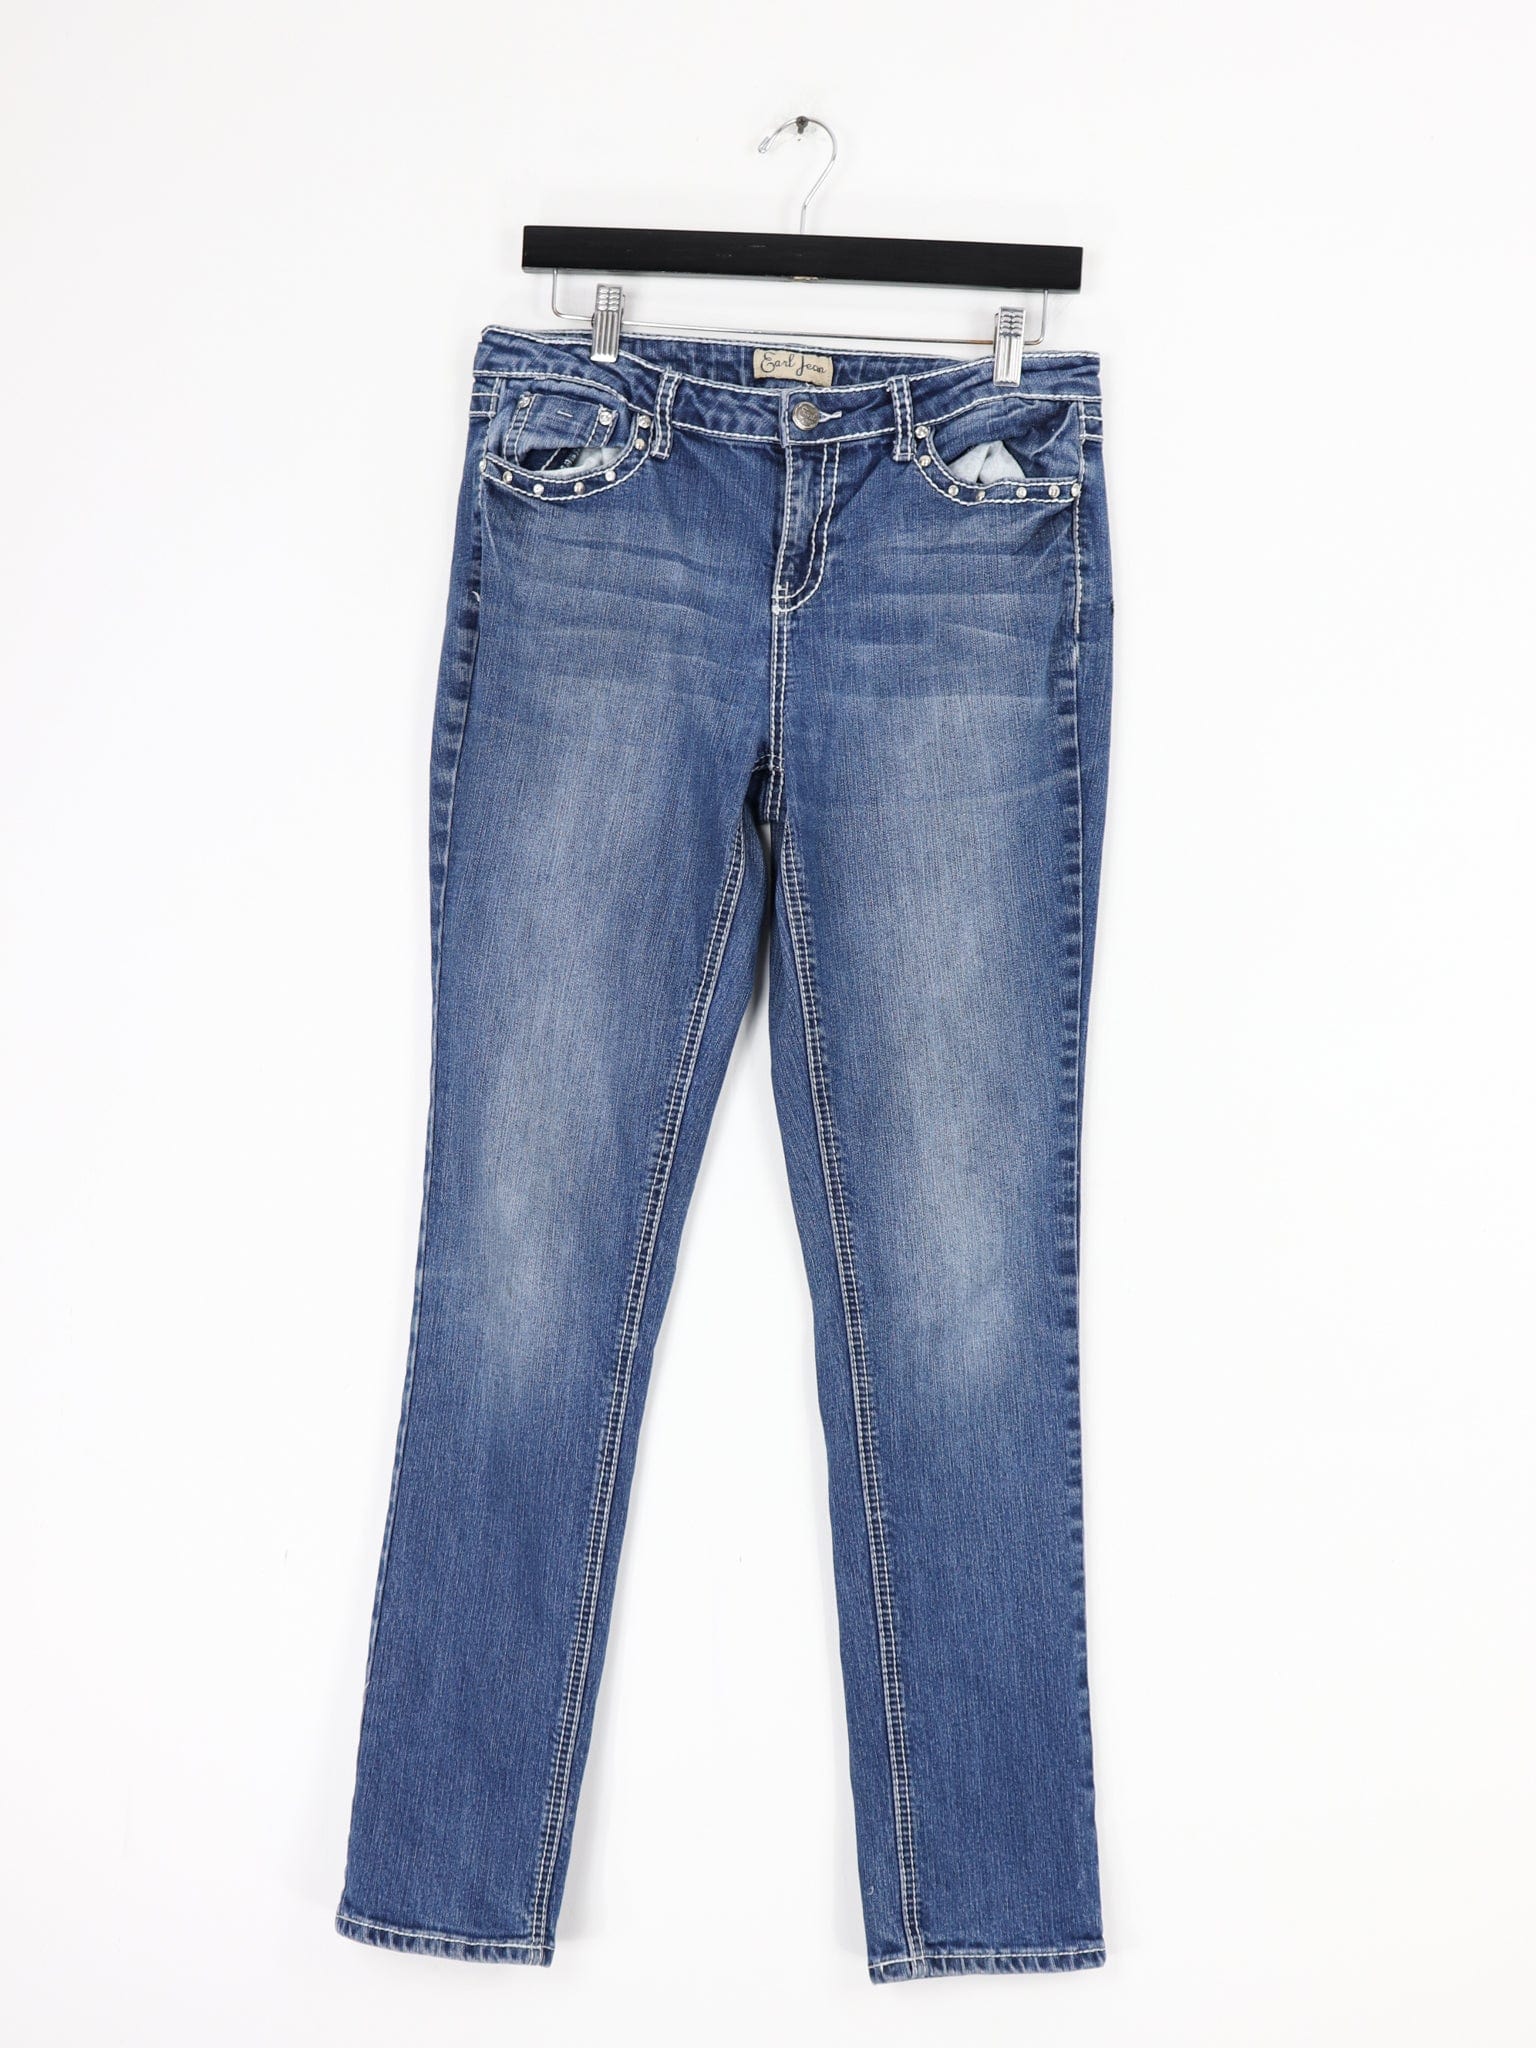 https://propervintagecanada.com/cdn/shop/products/other-jeans-earl-jean-embellished-low-rise-denim-jeans-women-s-size-32-x-30-30318104477755.jpg?v=1661992361